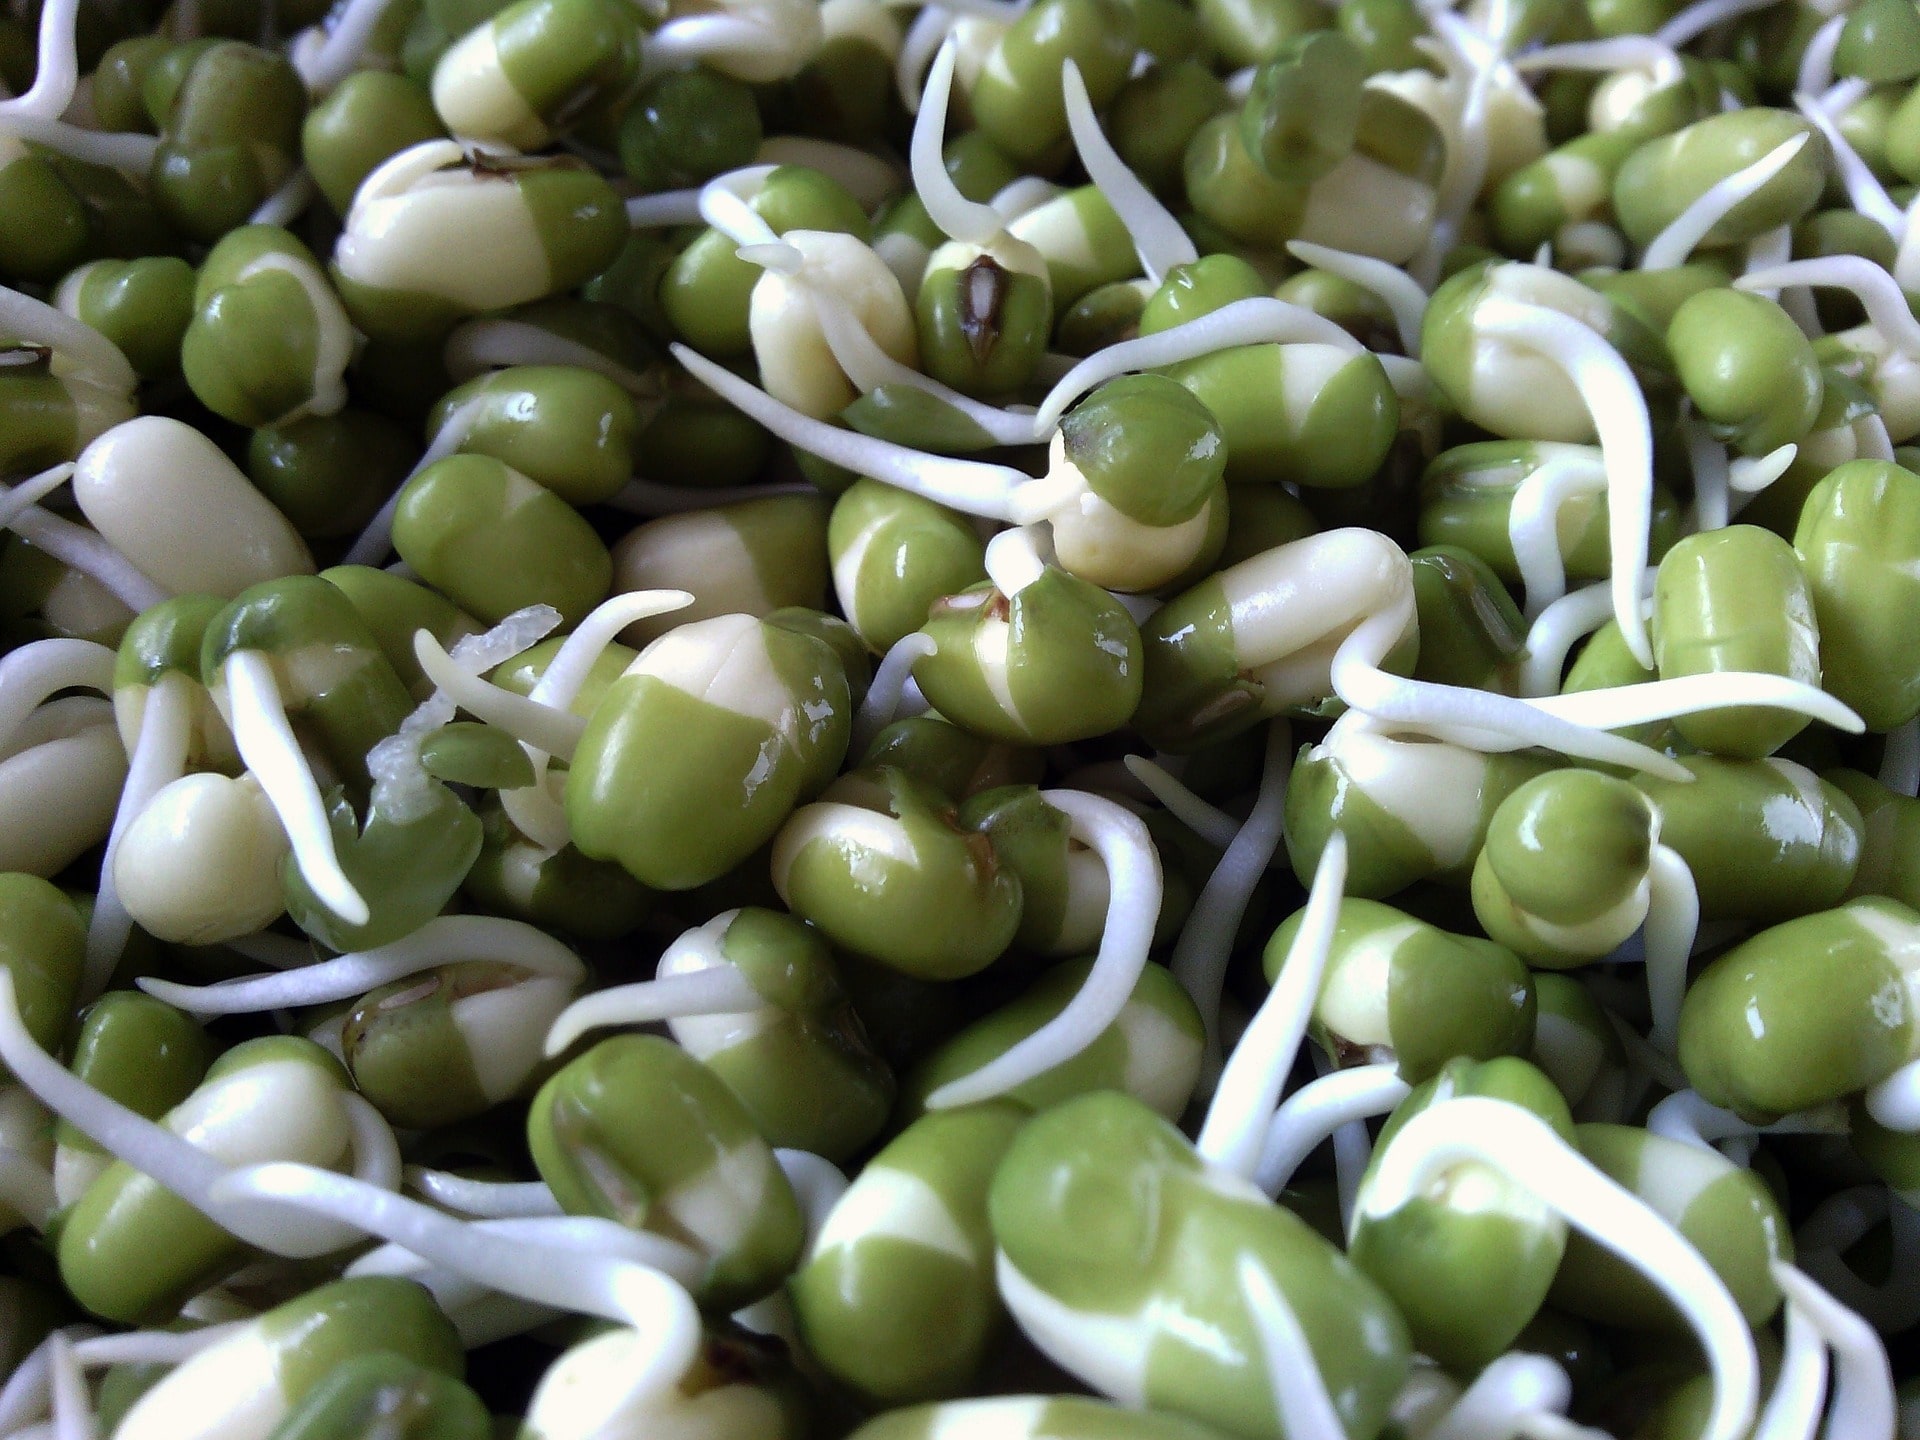 Klíčením fazolí mungo získáme potravinu s vyšším obsahem živin / foto: pixabay.com